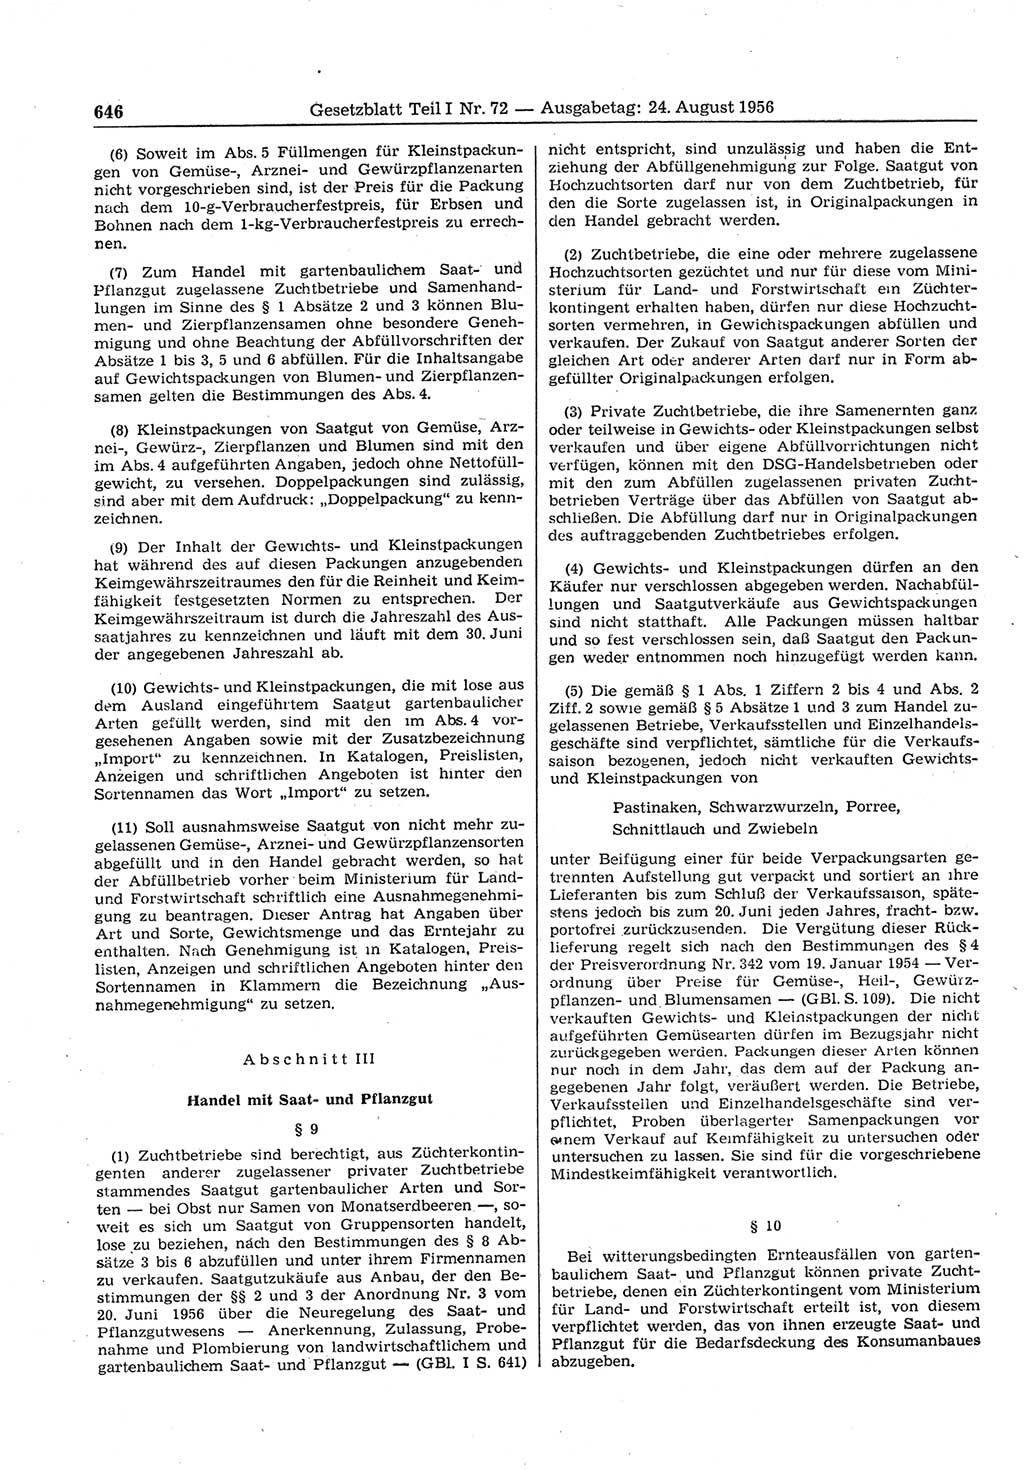 Gesetzblatt (GBl.) der Deutschen Demokratischen Republik (DDR) Teil Ⅰ 1956, Seite 646 (GBl. DDR Ⅰ 1956, S. 646)